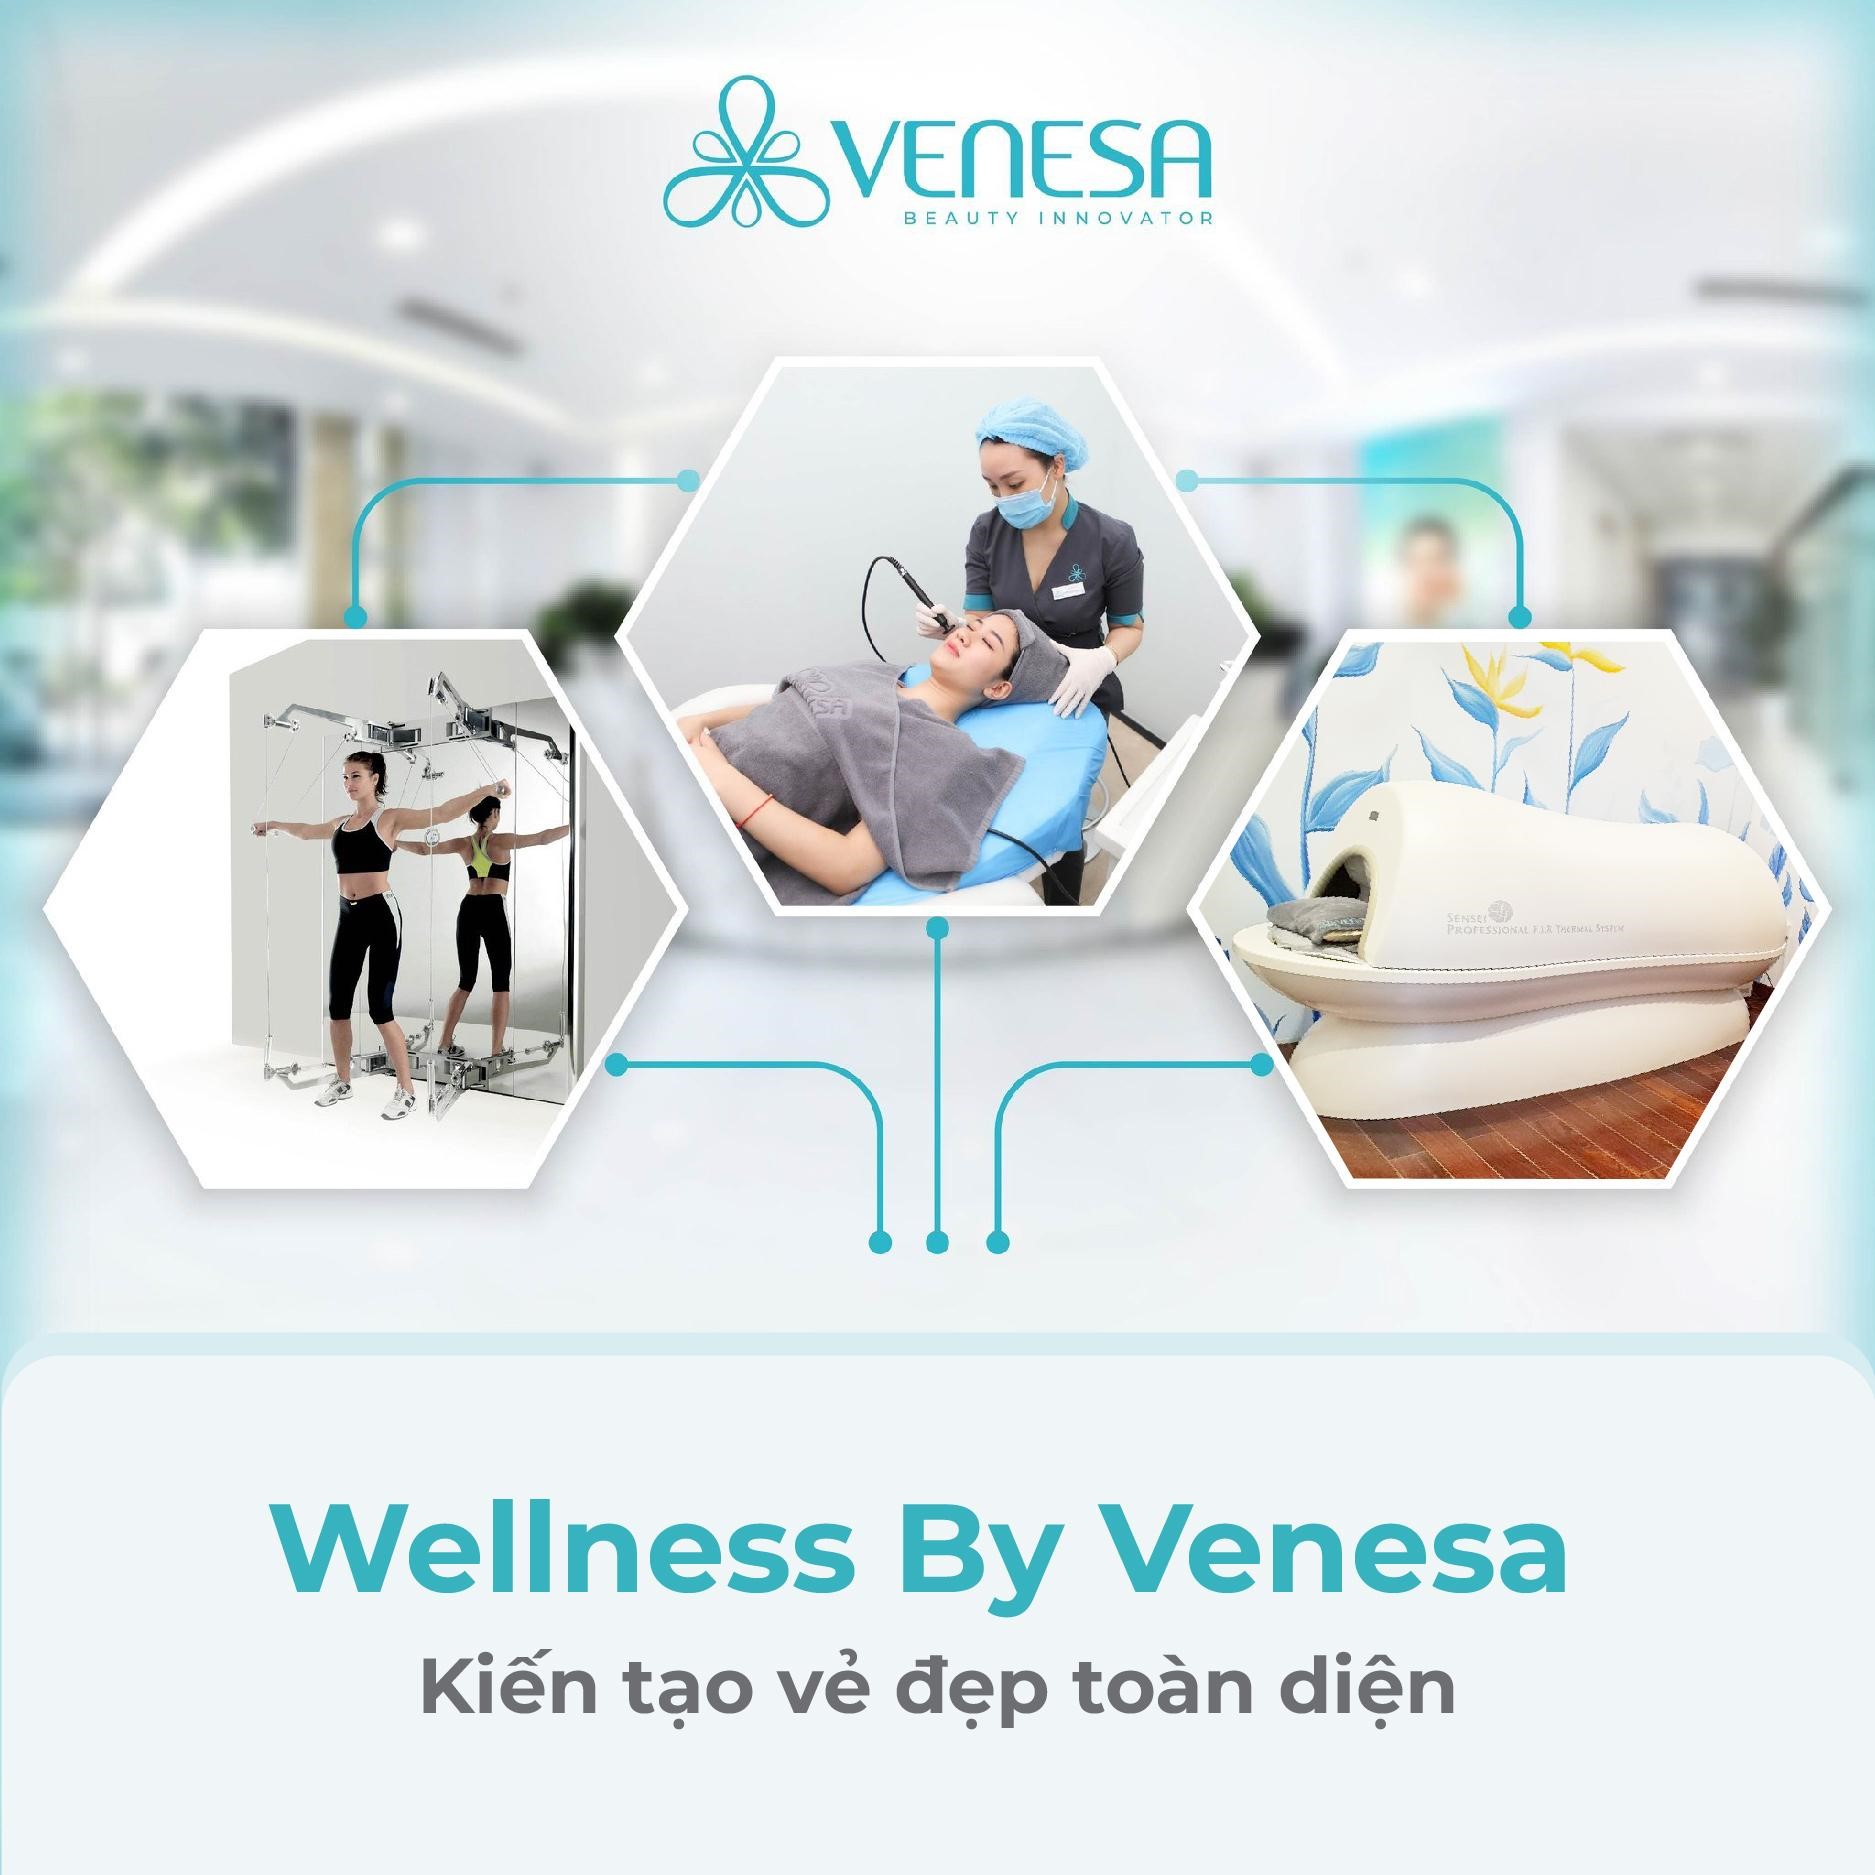 Wellness By Venesa: Giải pháp sức khỏe “3 trong 1” cho người bận rộn - 1